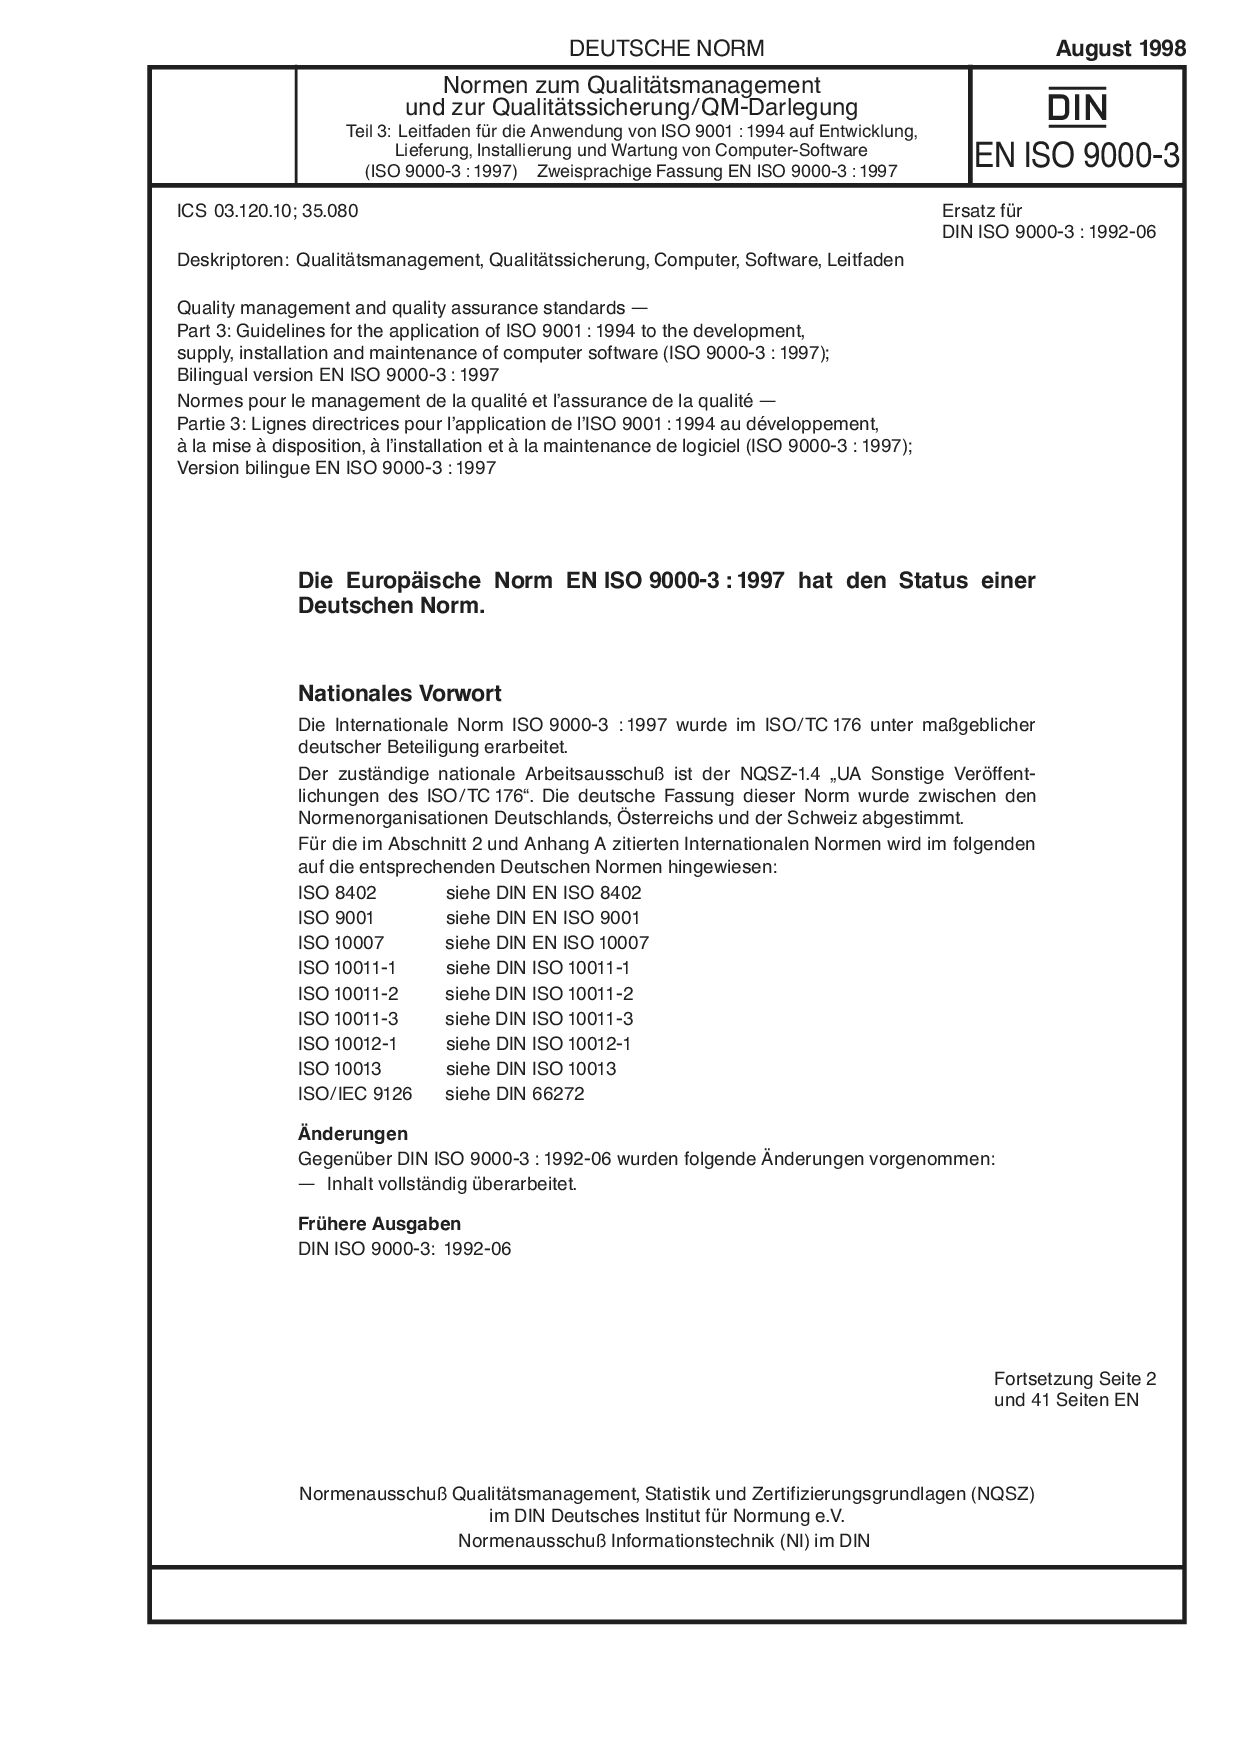 DIN EN ISO 9000-3:1998